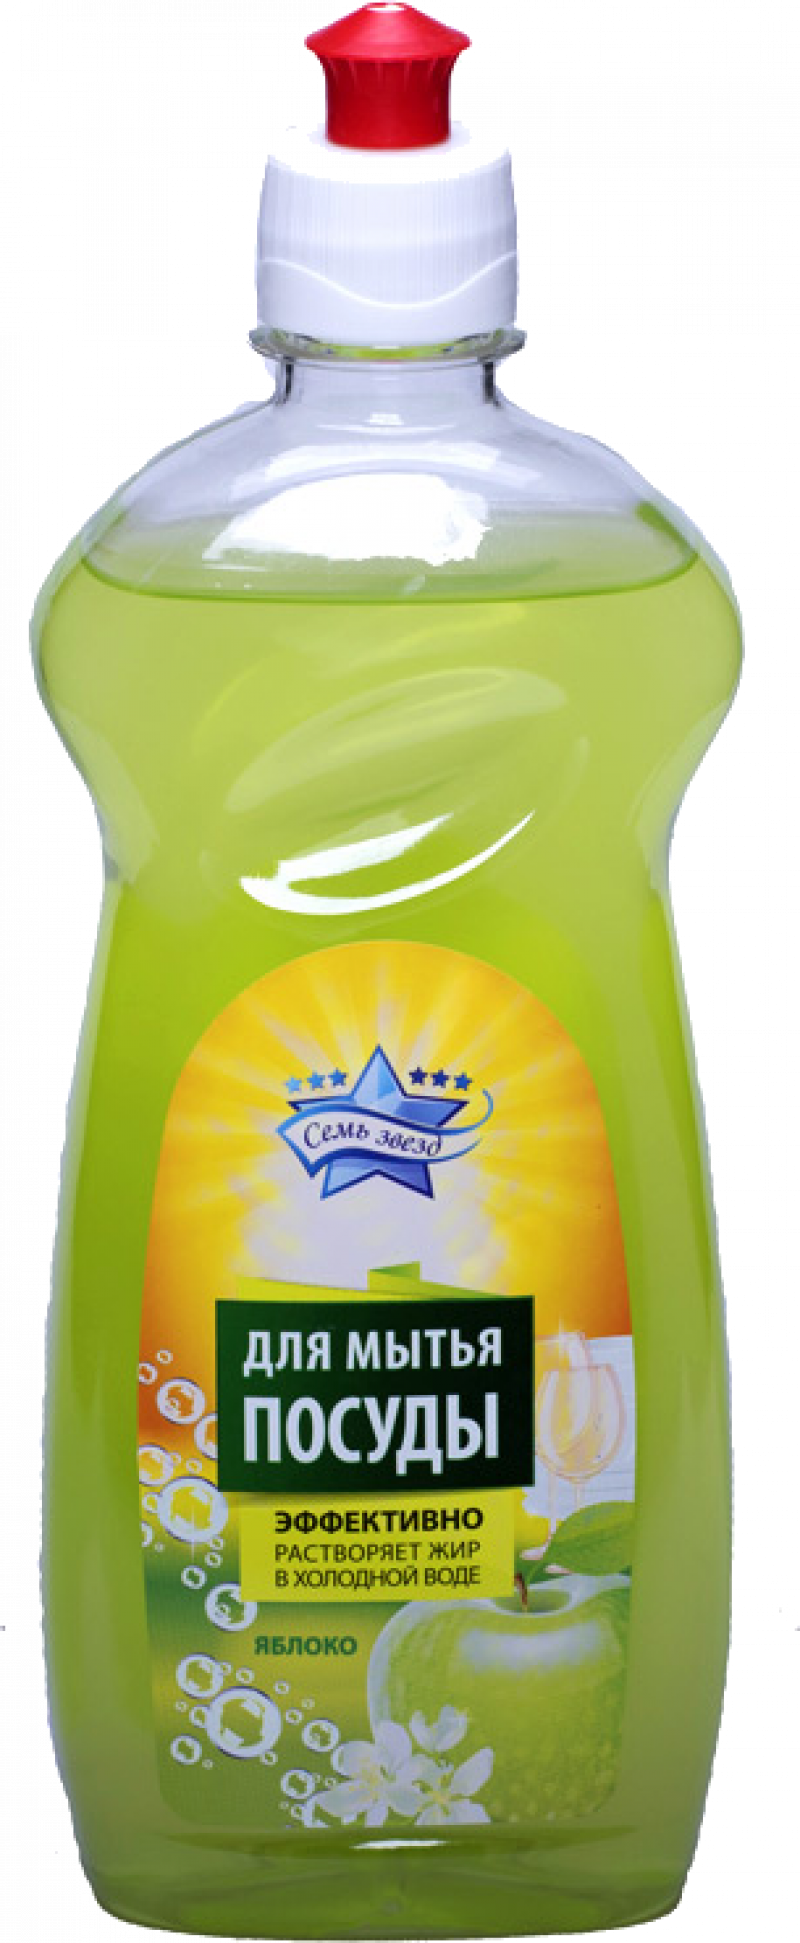 Средство для мытья посуды ТМ Семь звезд Яблоко 500мл